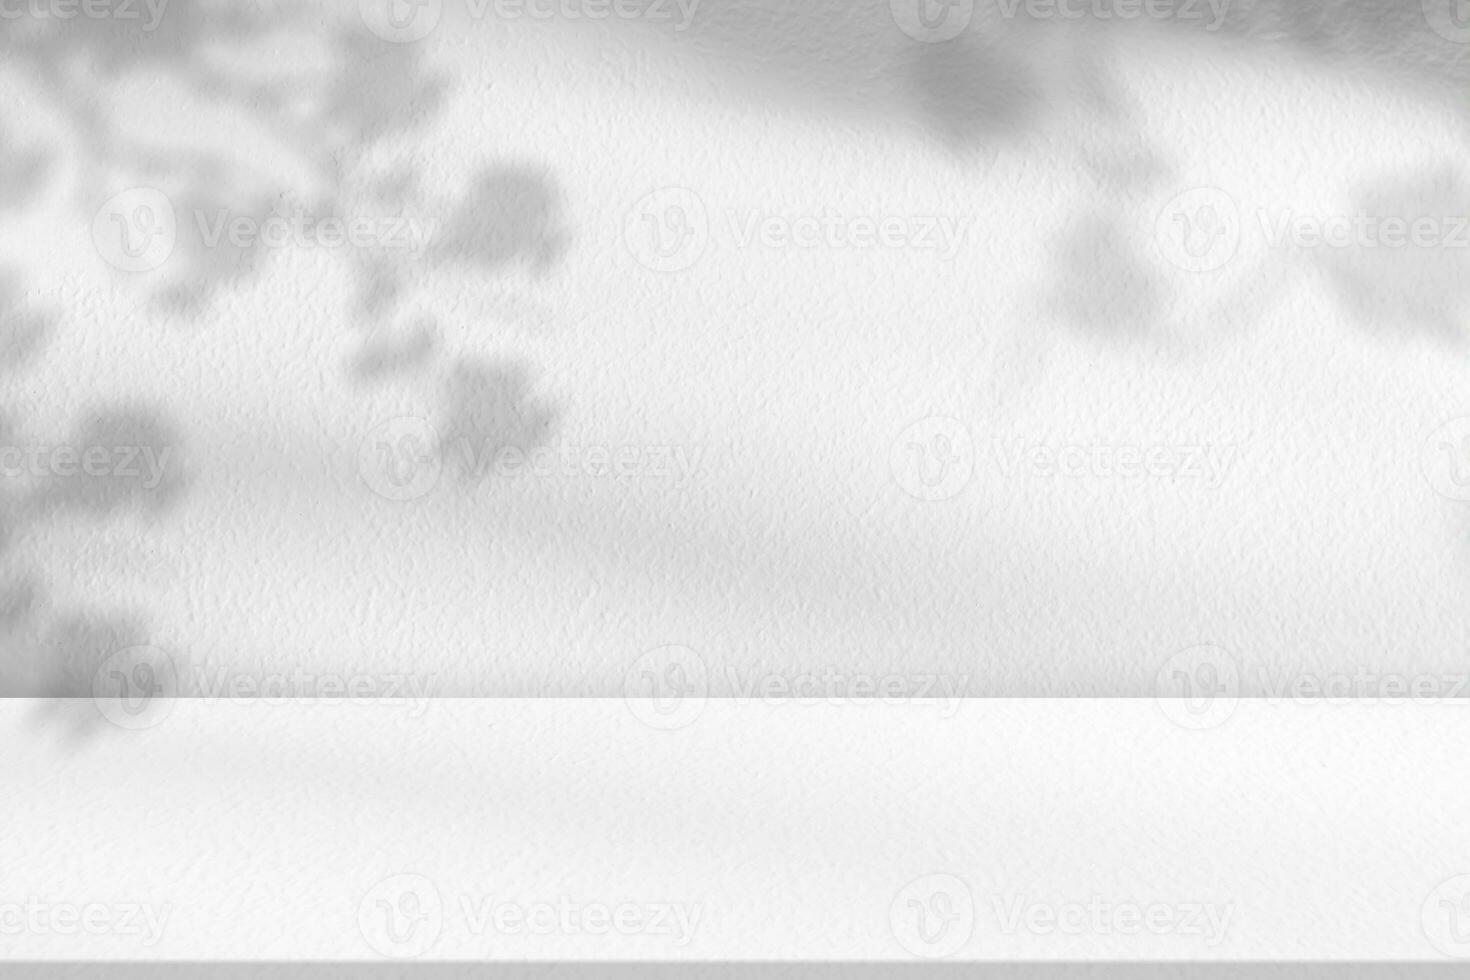 betong vägg textur med körsbär blomma skugga, vit cement med löv skugga täcka över på golv, bakgrund tömma grå studio rum med tabell topp, bakgrund för kosmetisk produkt visa foto